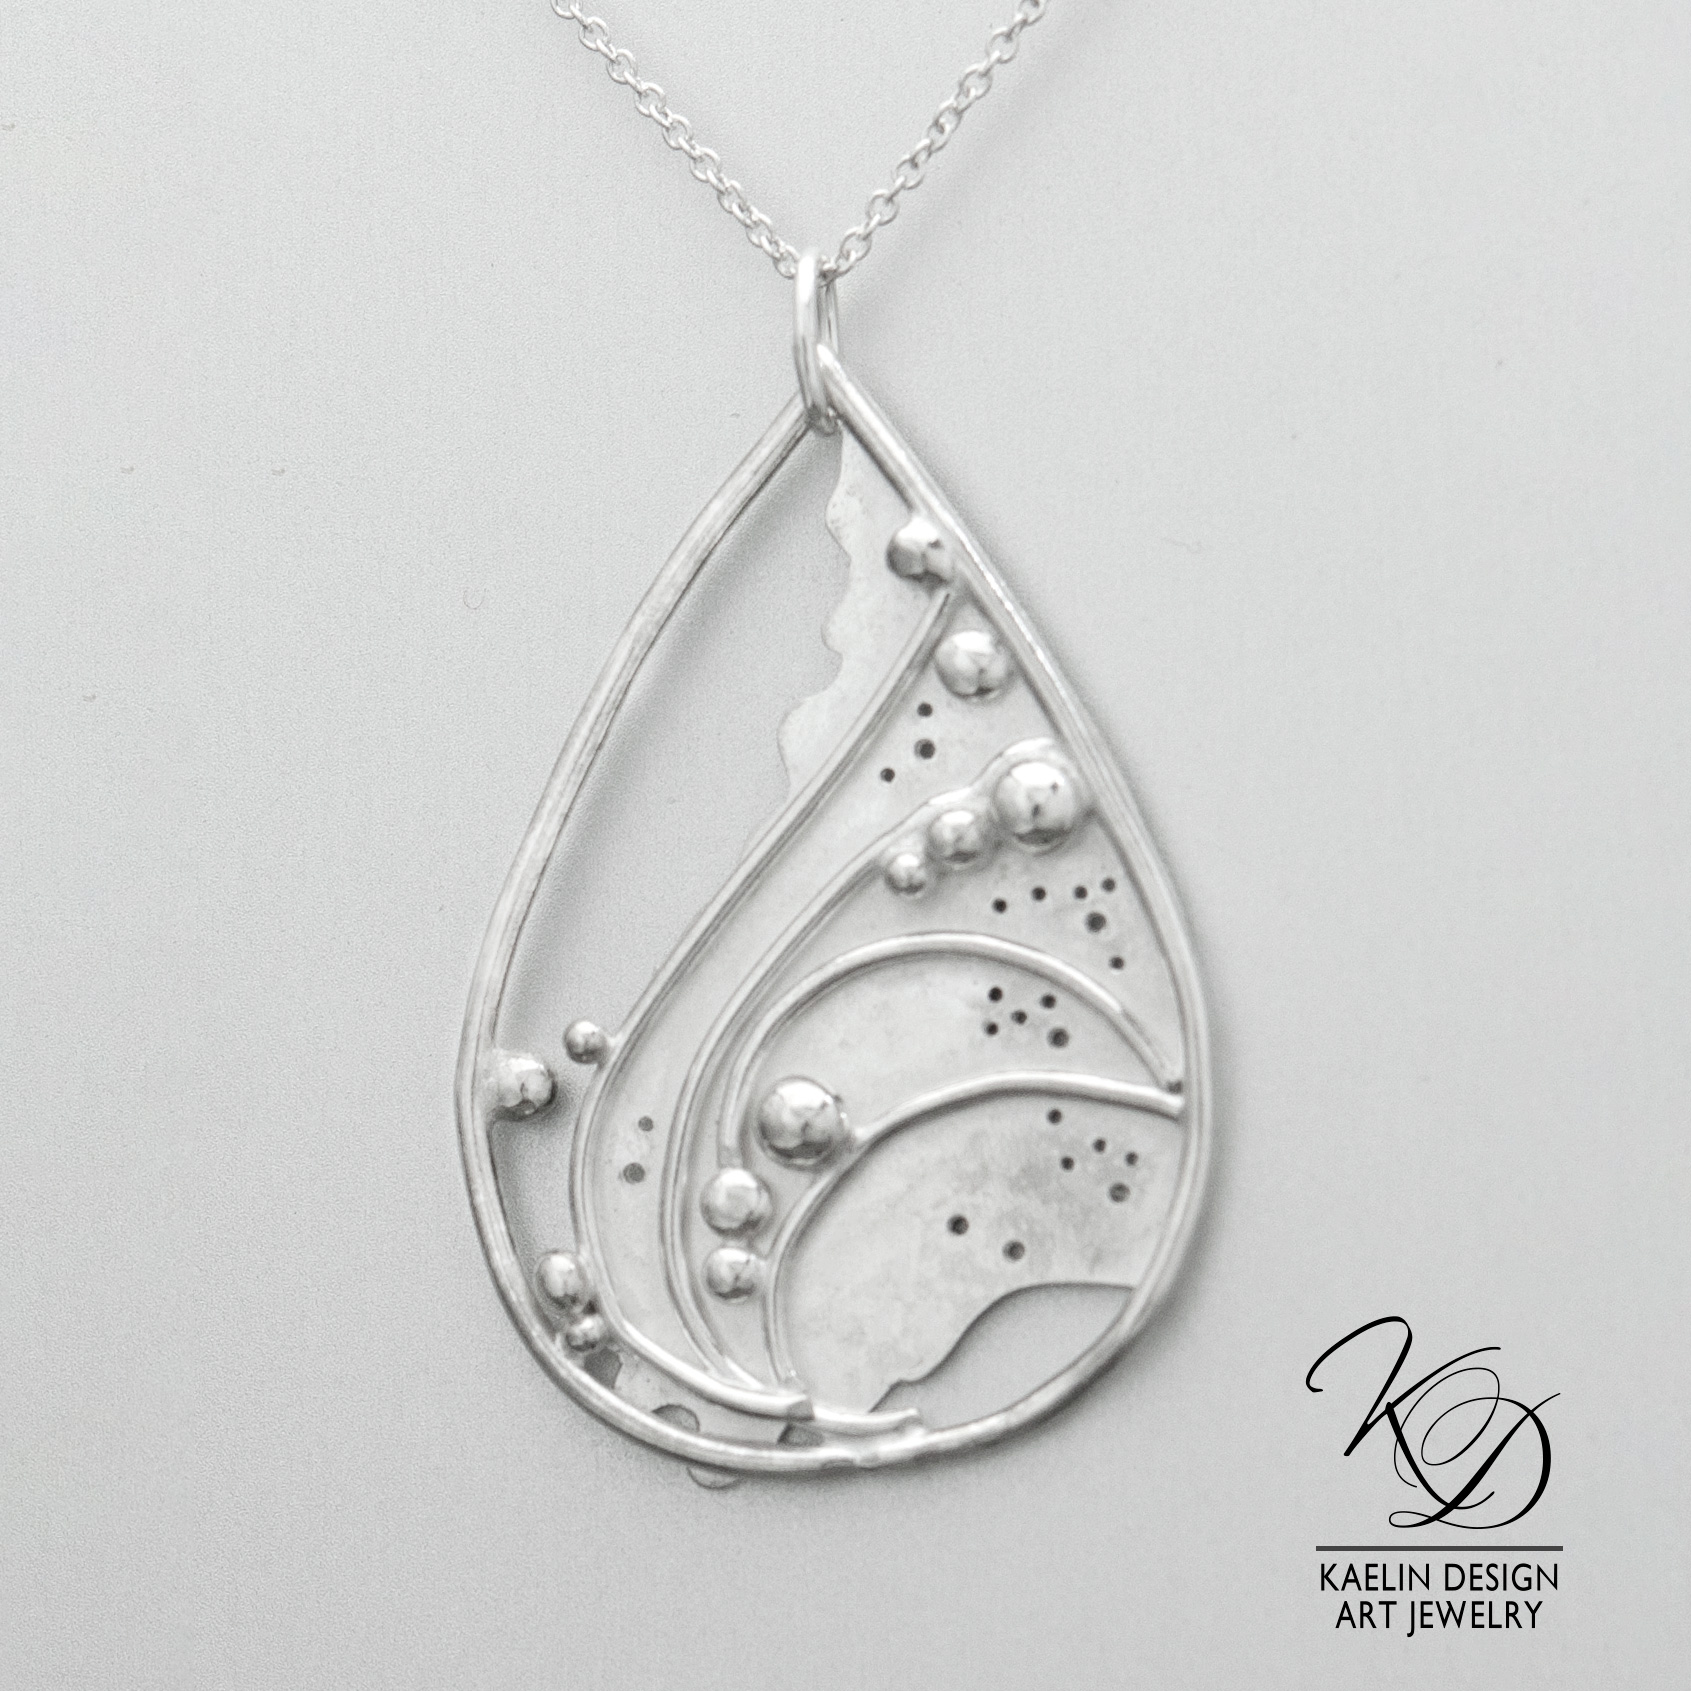 Sea Foam Sterling Silver Ocean inspired Art Jewelry Pendant by Kaelin Design